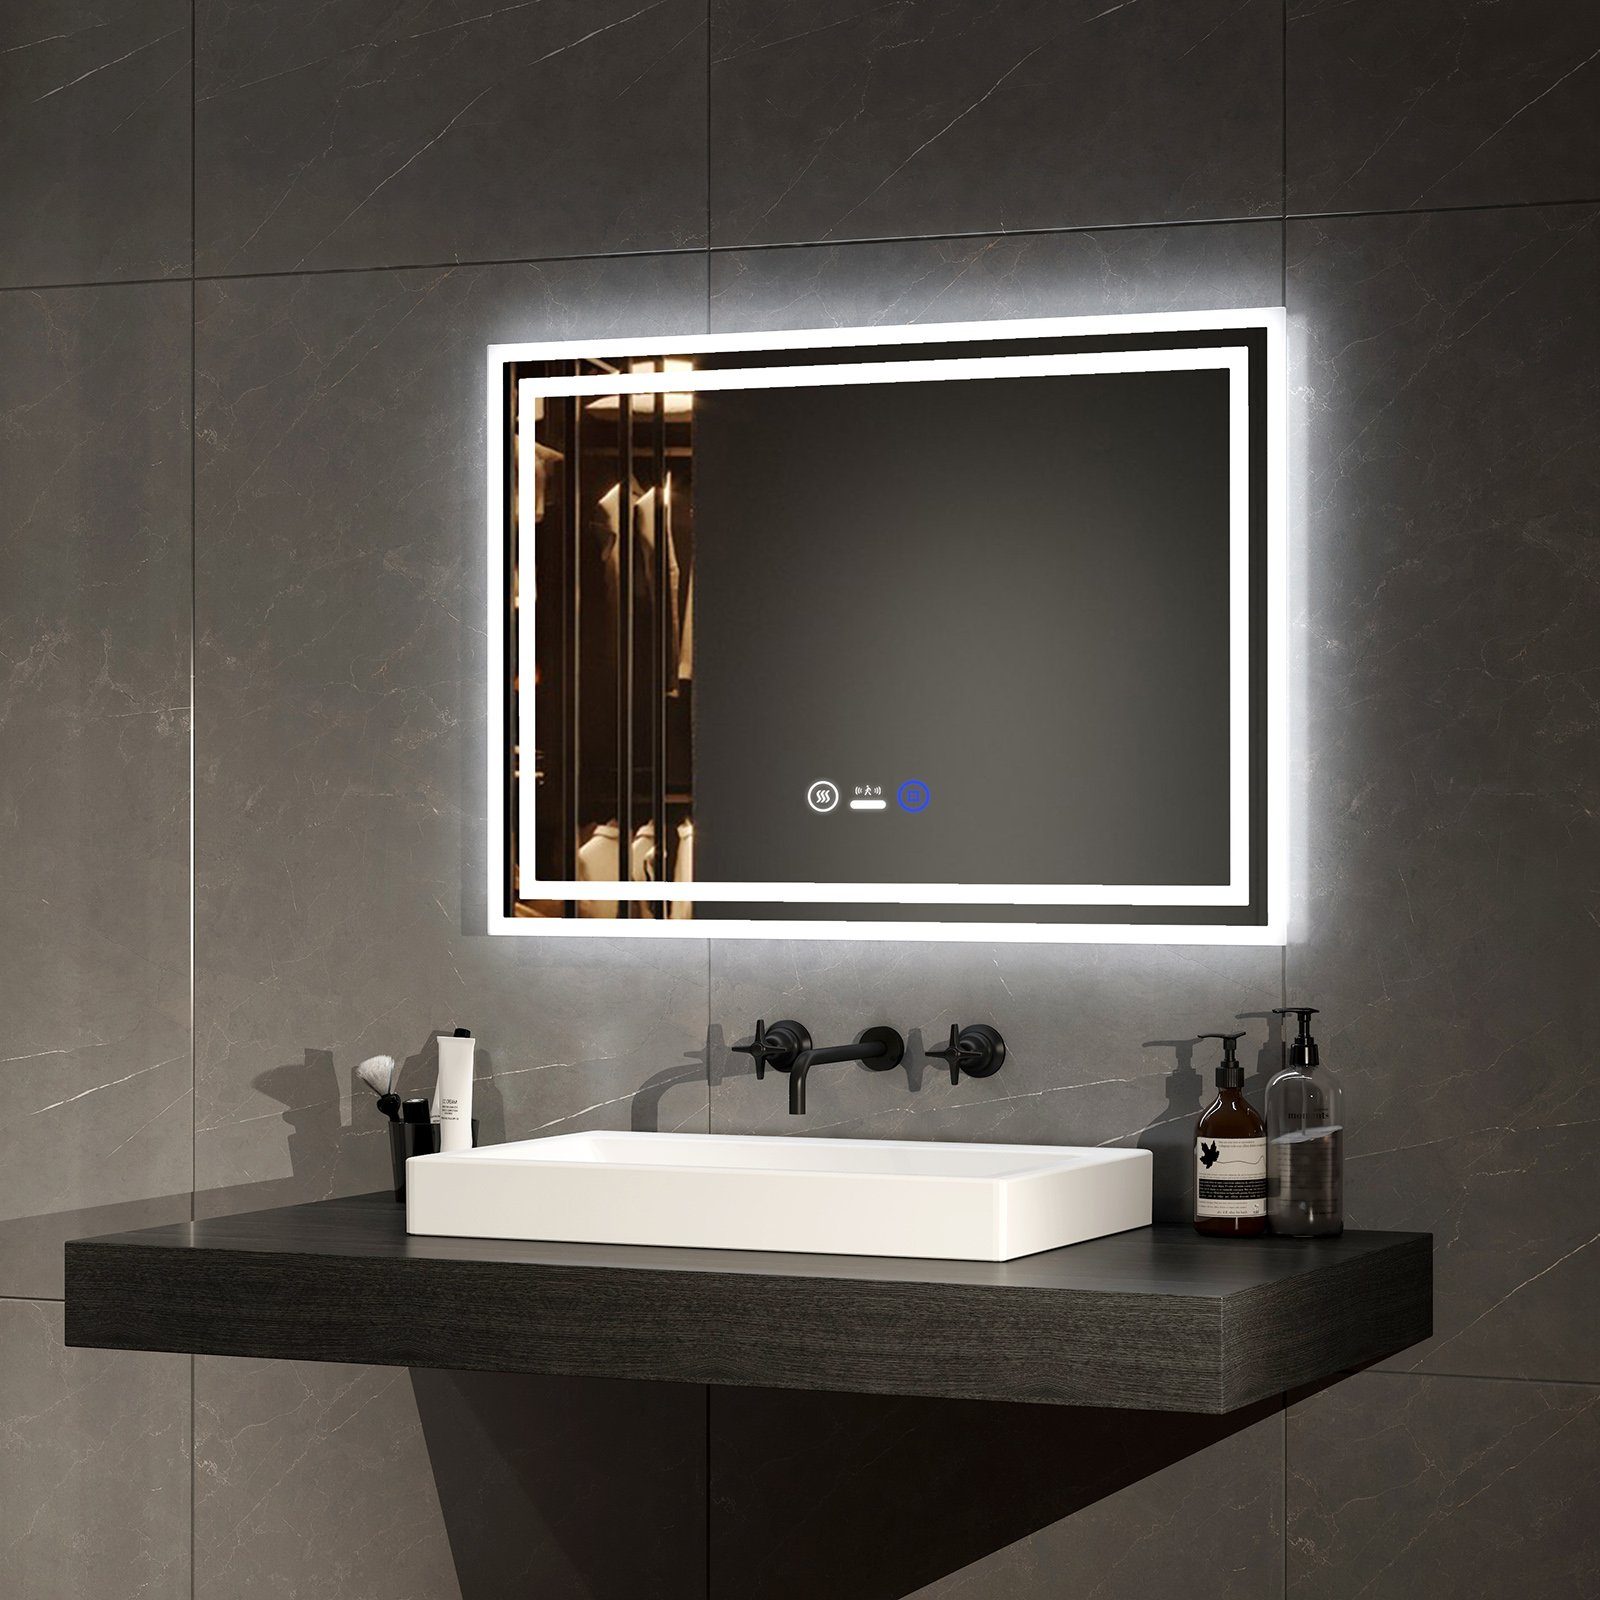 EMKE Badspiegel LED Badspiegel mit Beleuchtung Bewegungssensor Wandspiegel, mit Beschlagfreiheit, Dimmbarem Touch-Schalter und 3 Farben des Lichts | Badspiegel